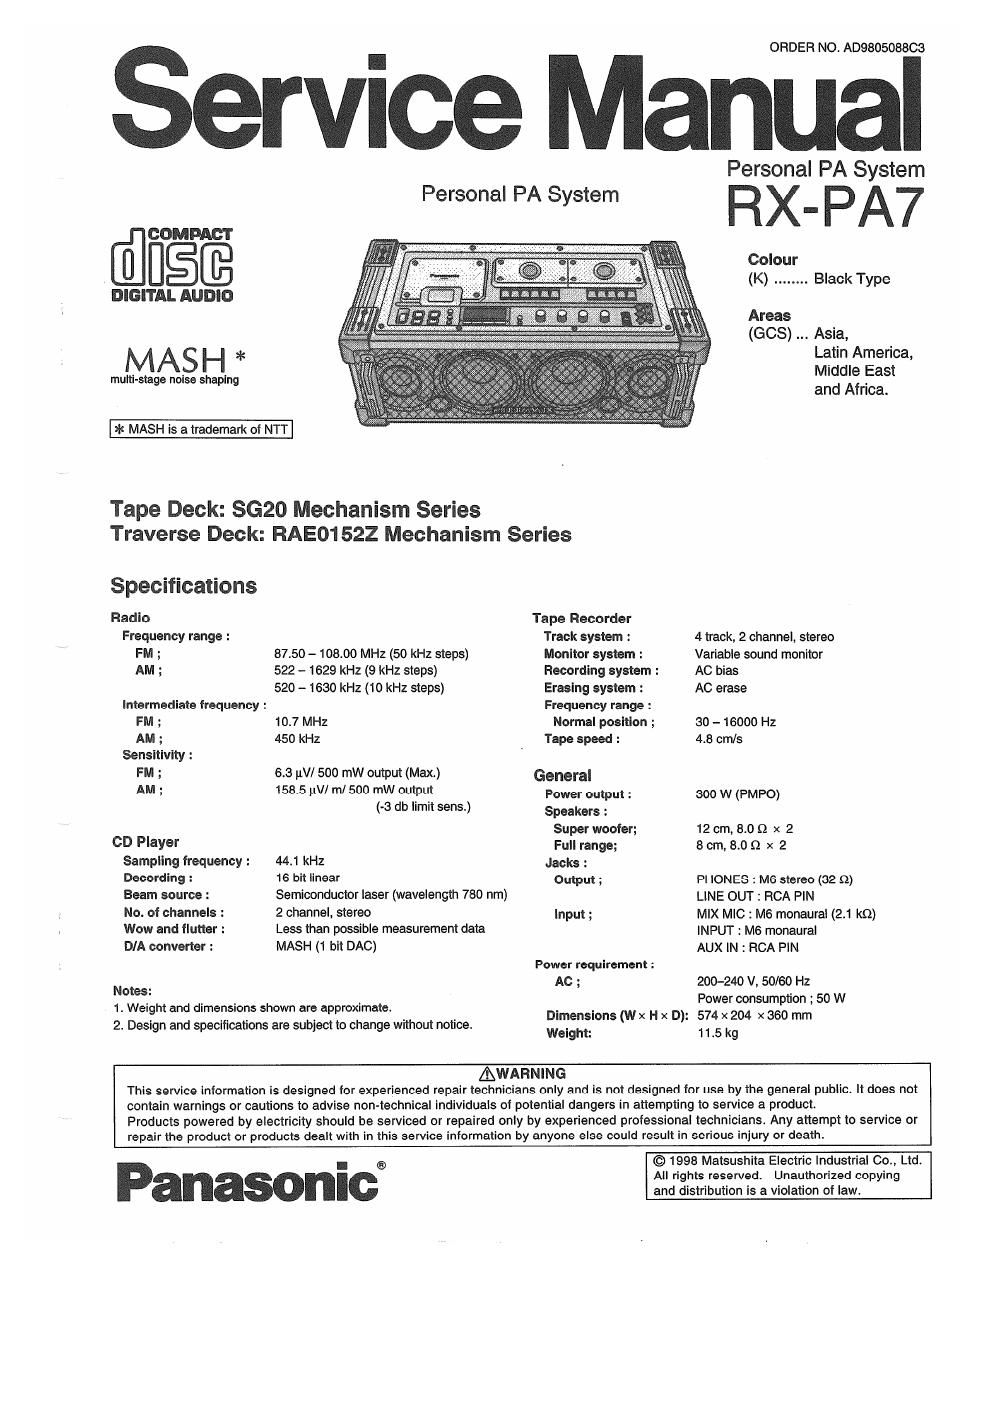 panasonic rx pa 7 service manual